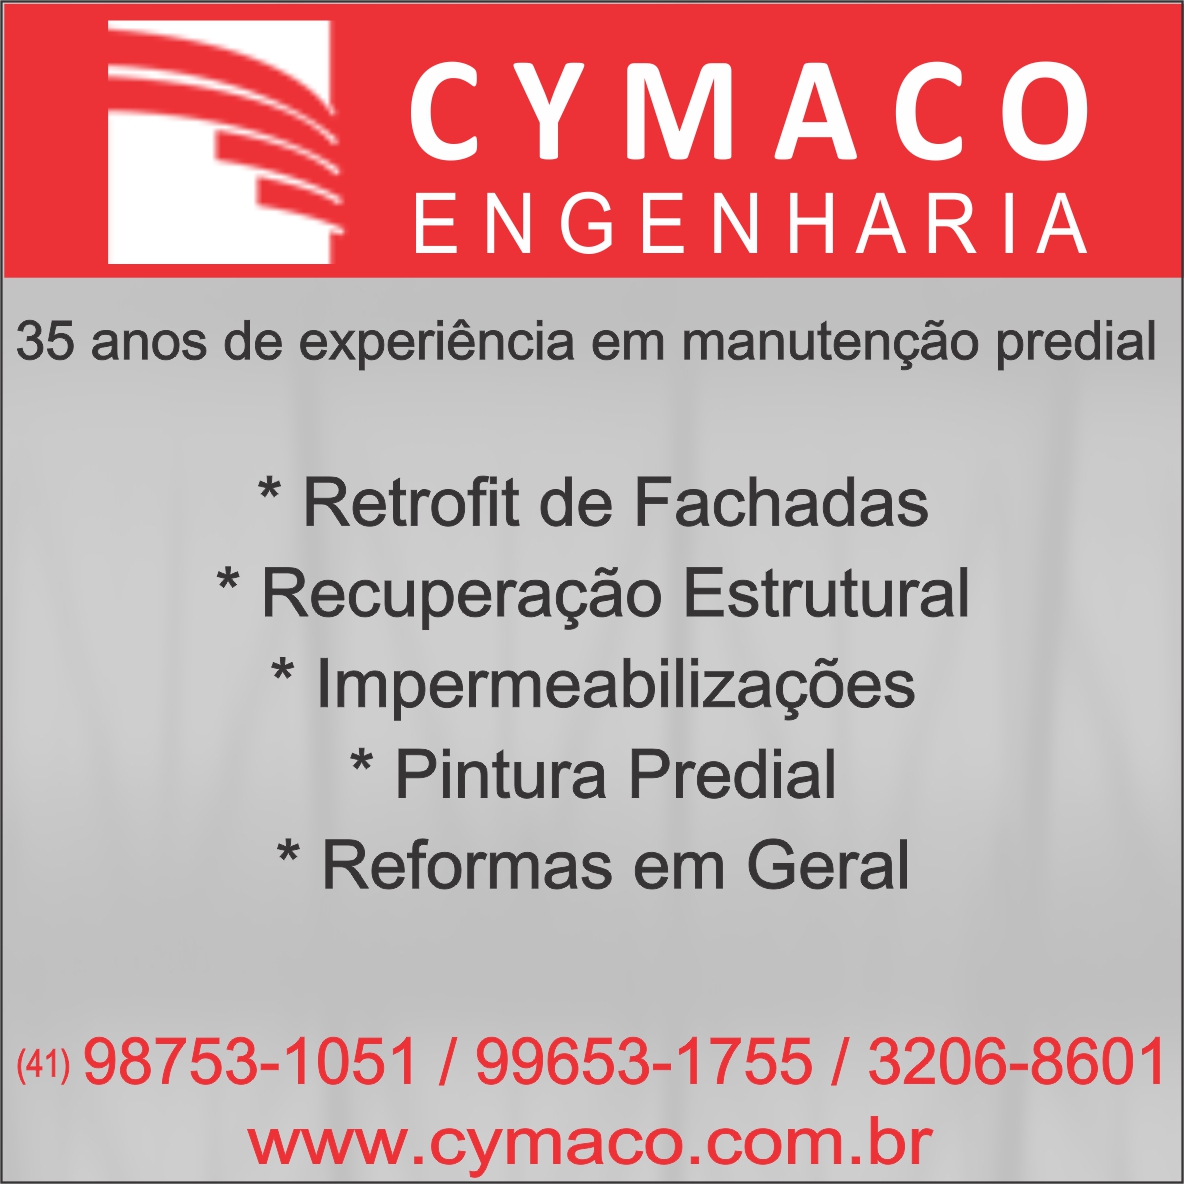 cymaco